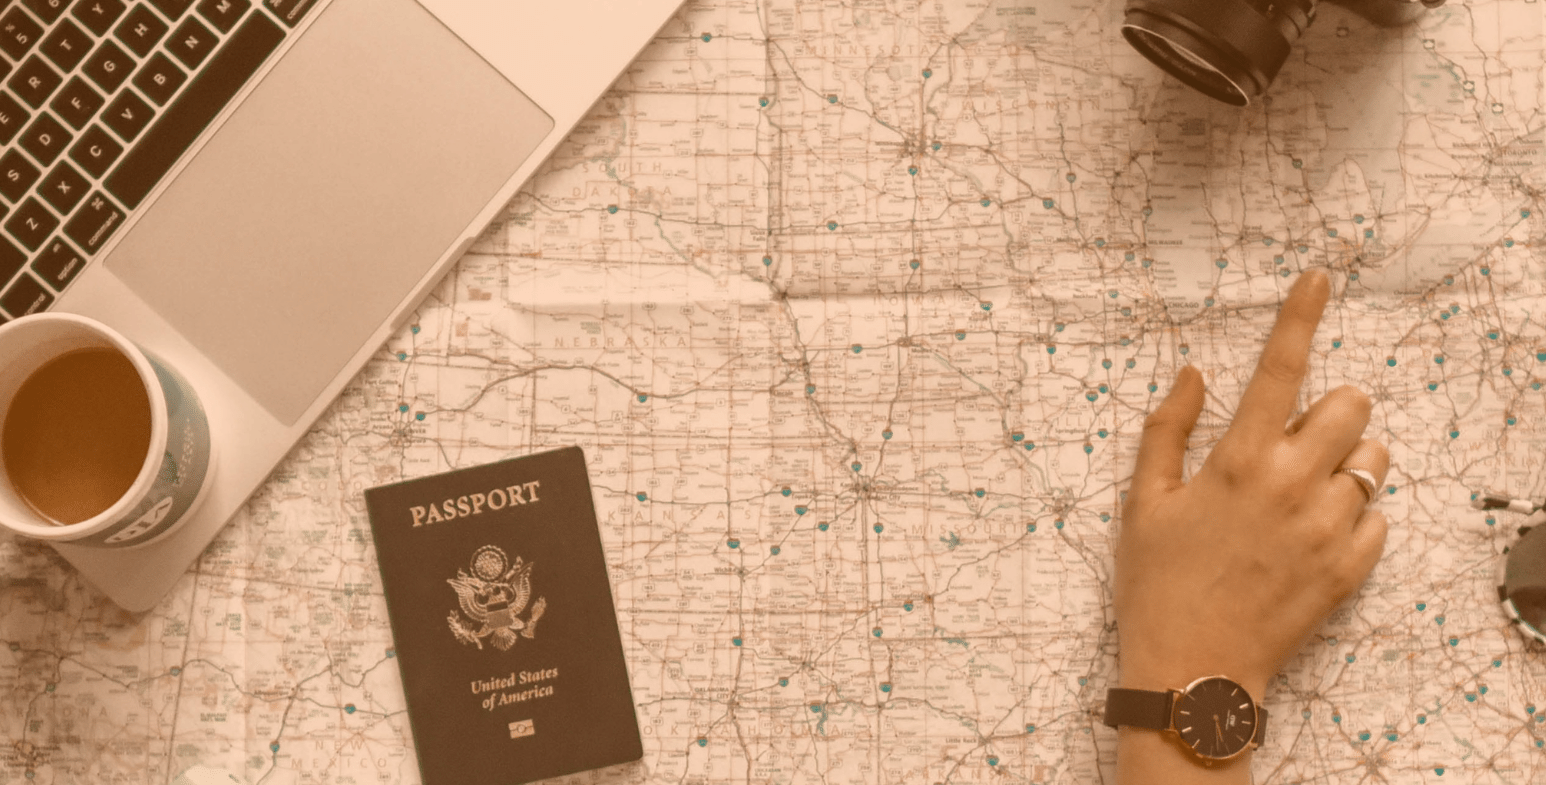 Rozłożona mapa, na której leży laptop oraz paszport. Osoba wskazuje dłonią lokalizację.